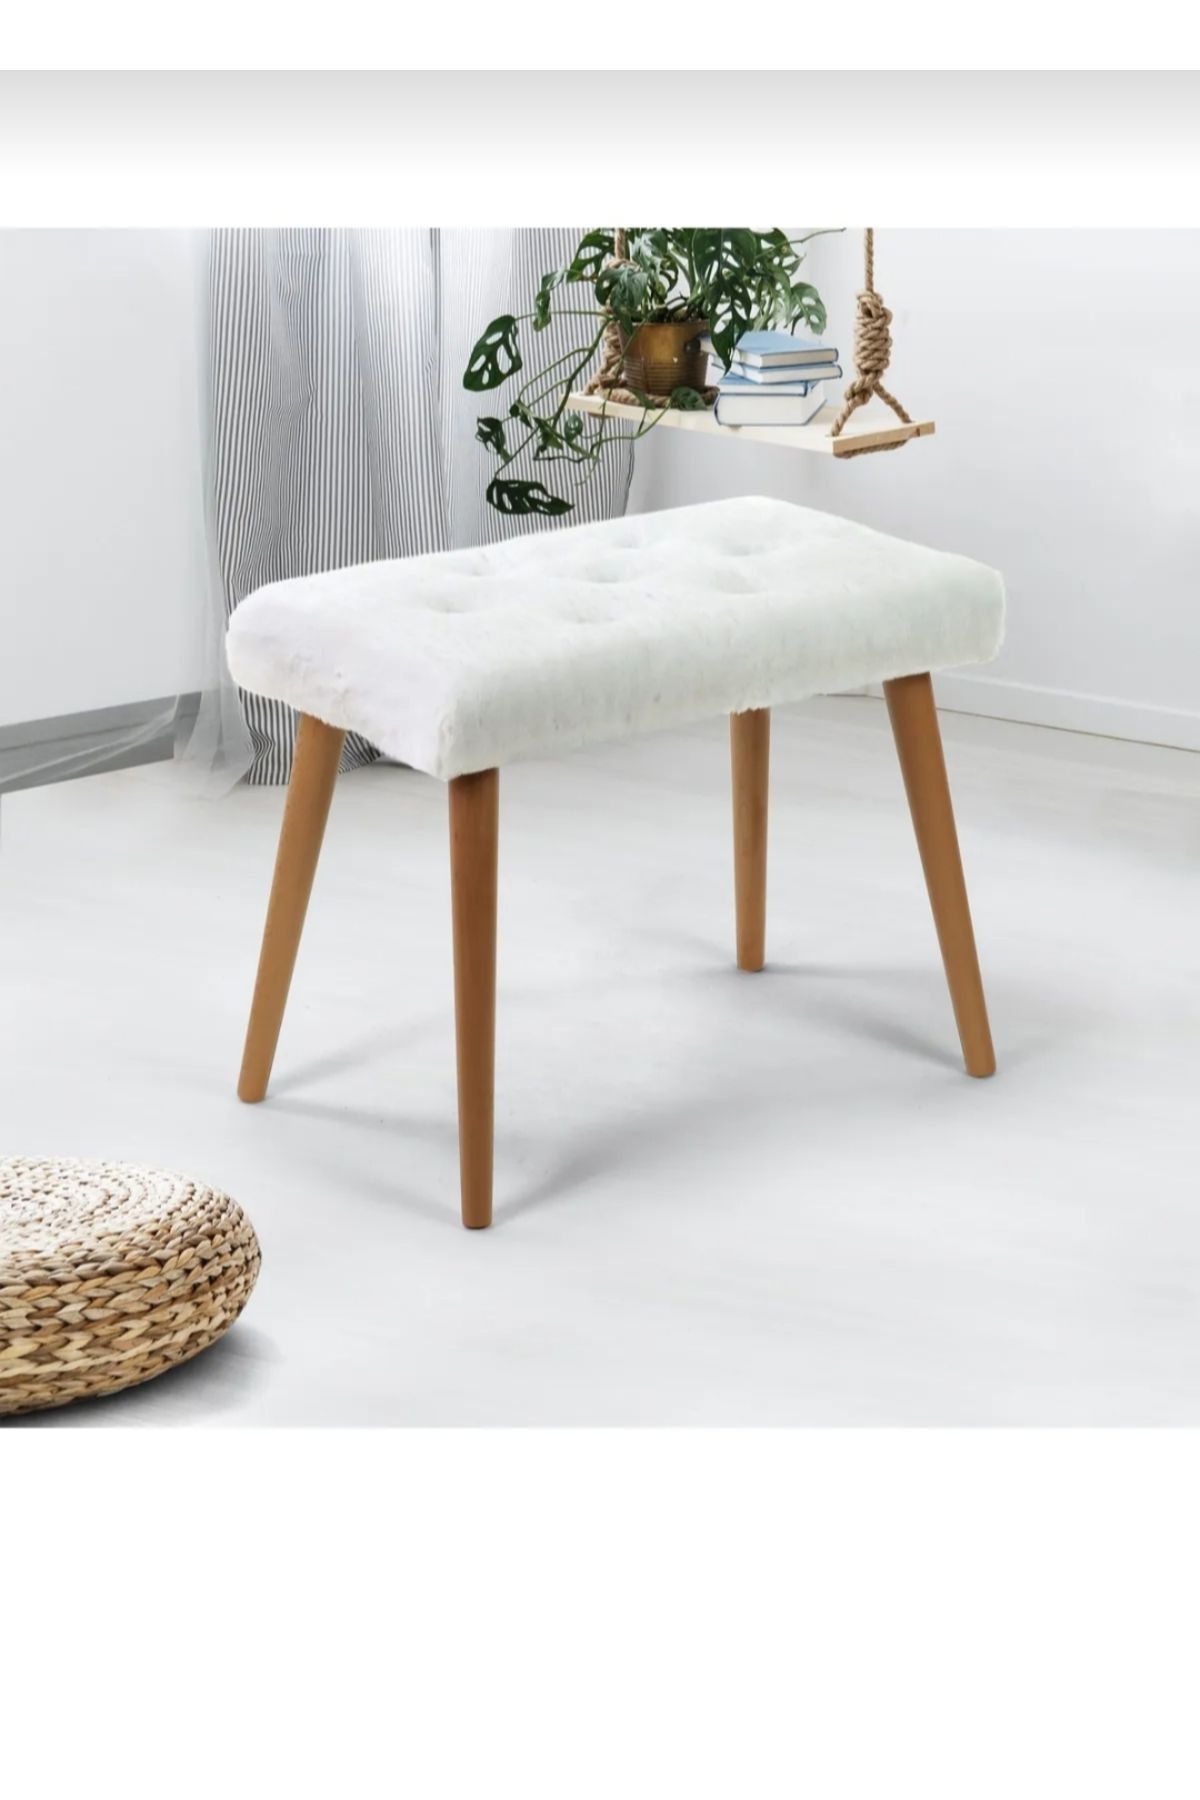 T.ipekli Beyaz puf berjer çocuk koltuğu puf çay seti makyaj masası oturak sandalye kedi yatağı yatak